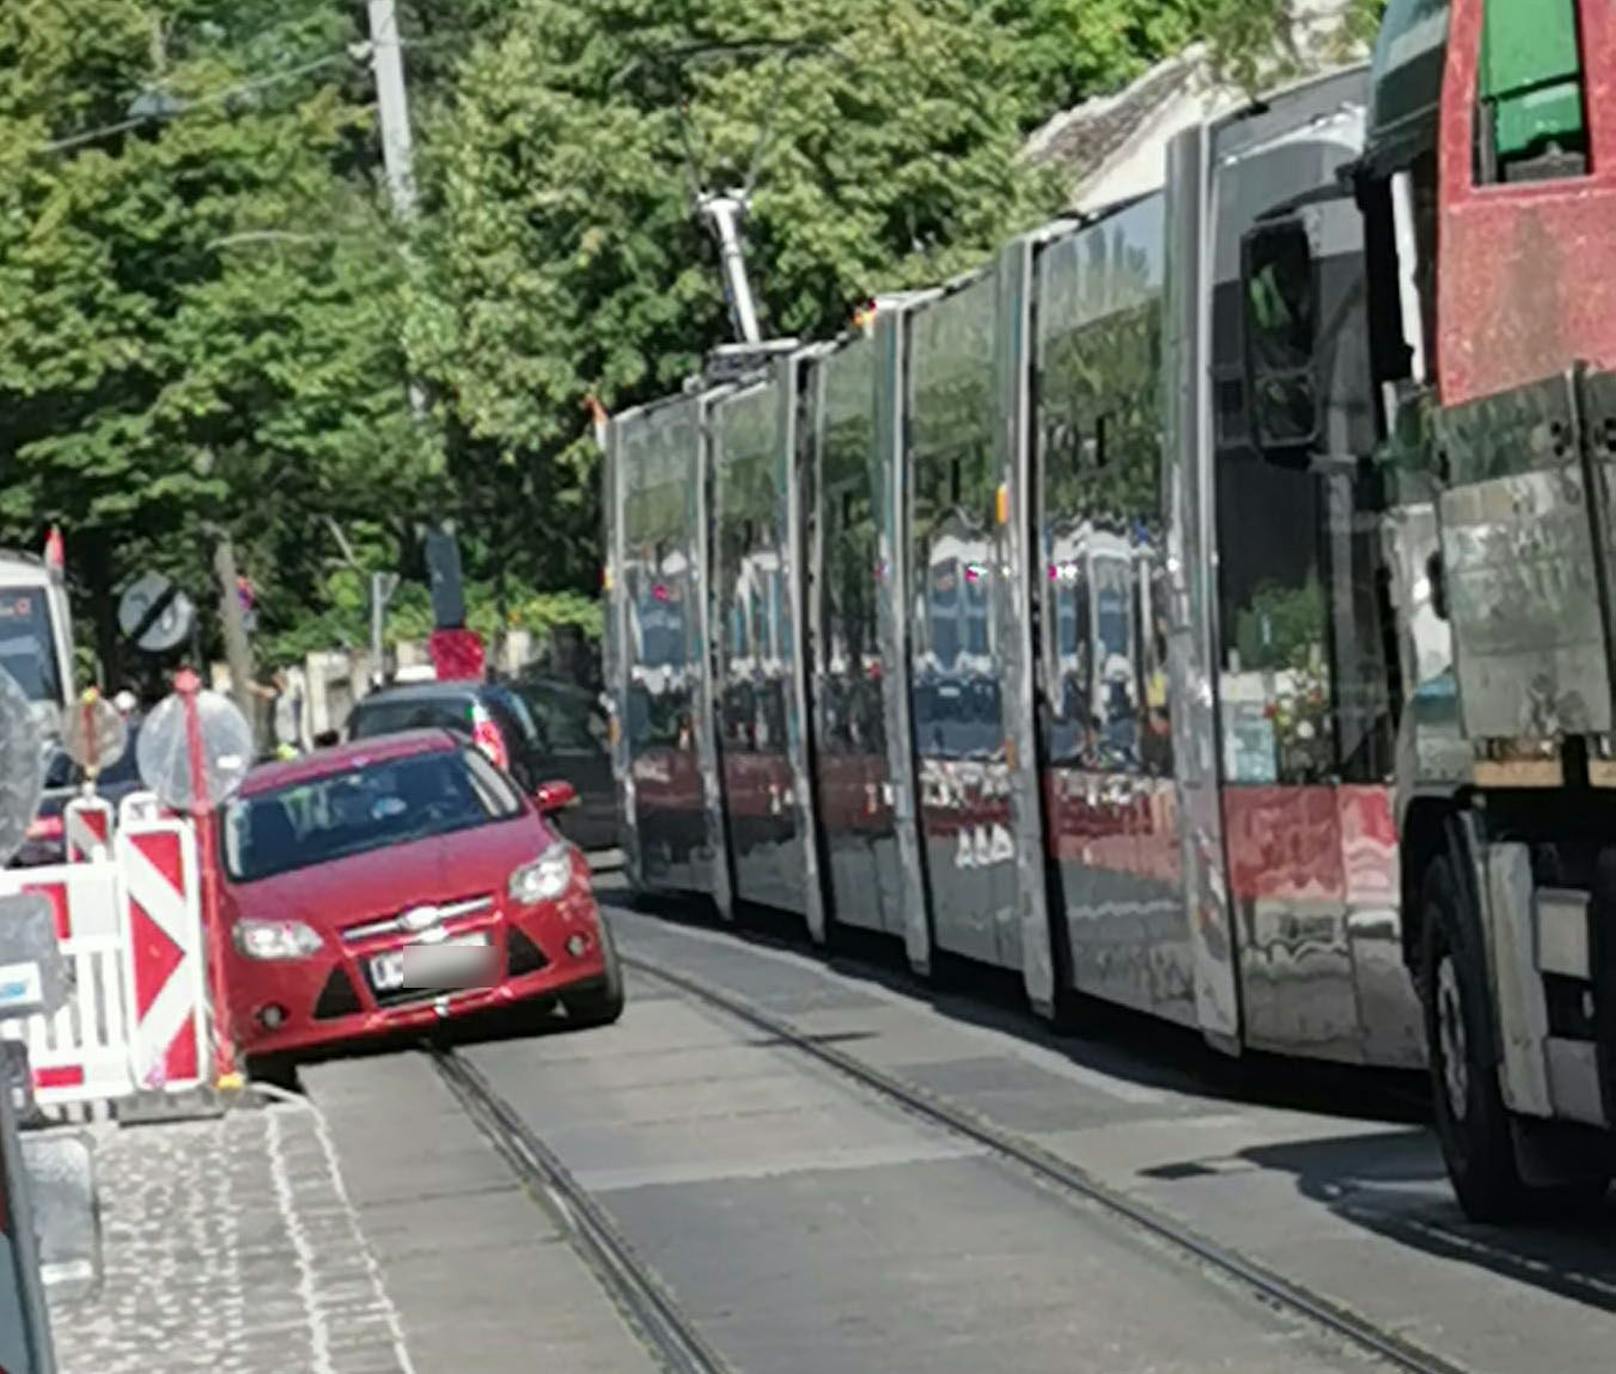 Derzeit steht die Bim-Linie 41 Richtung Pötzleinsdorf still.